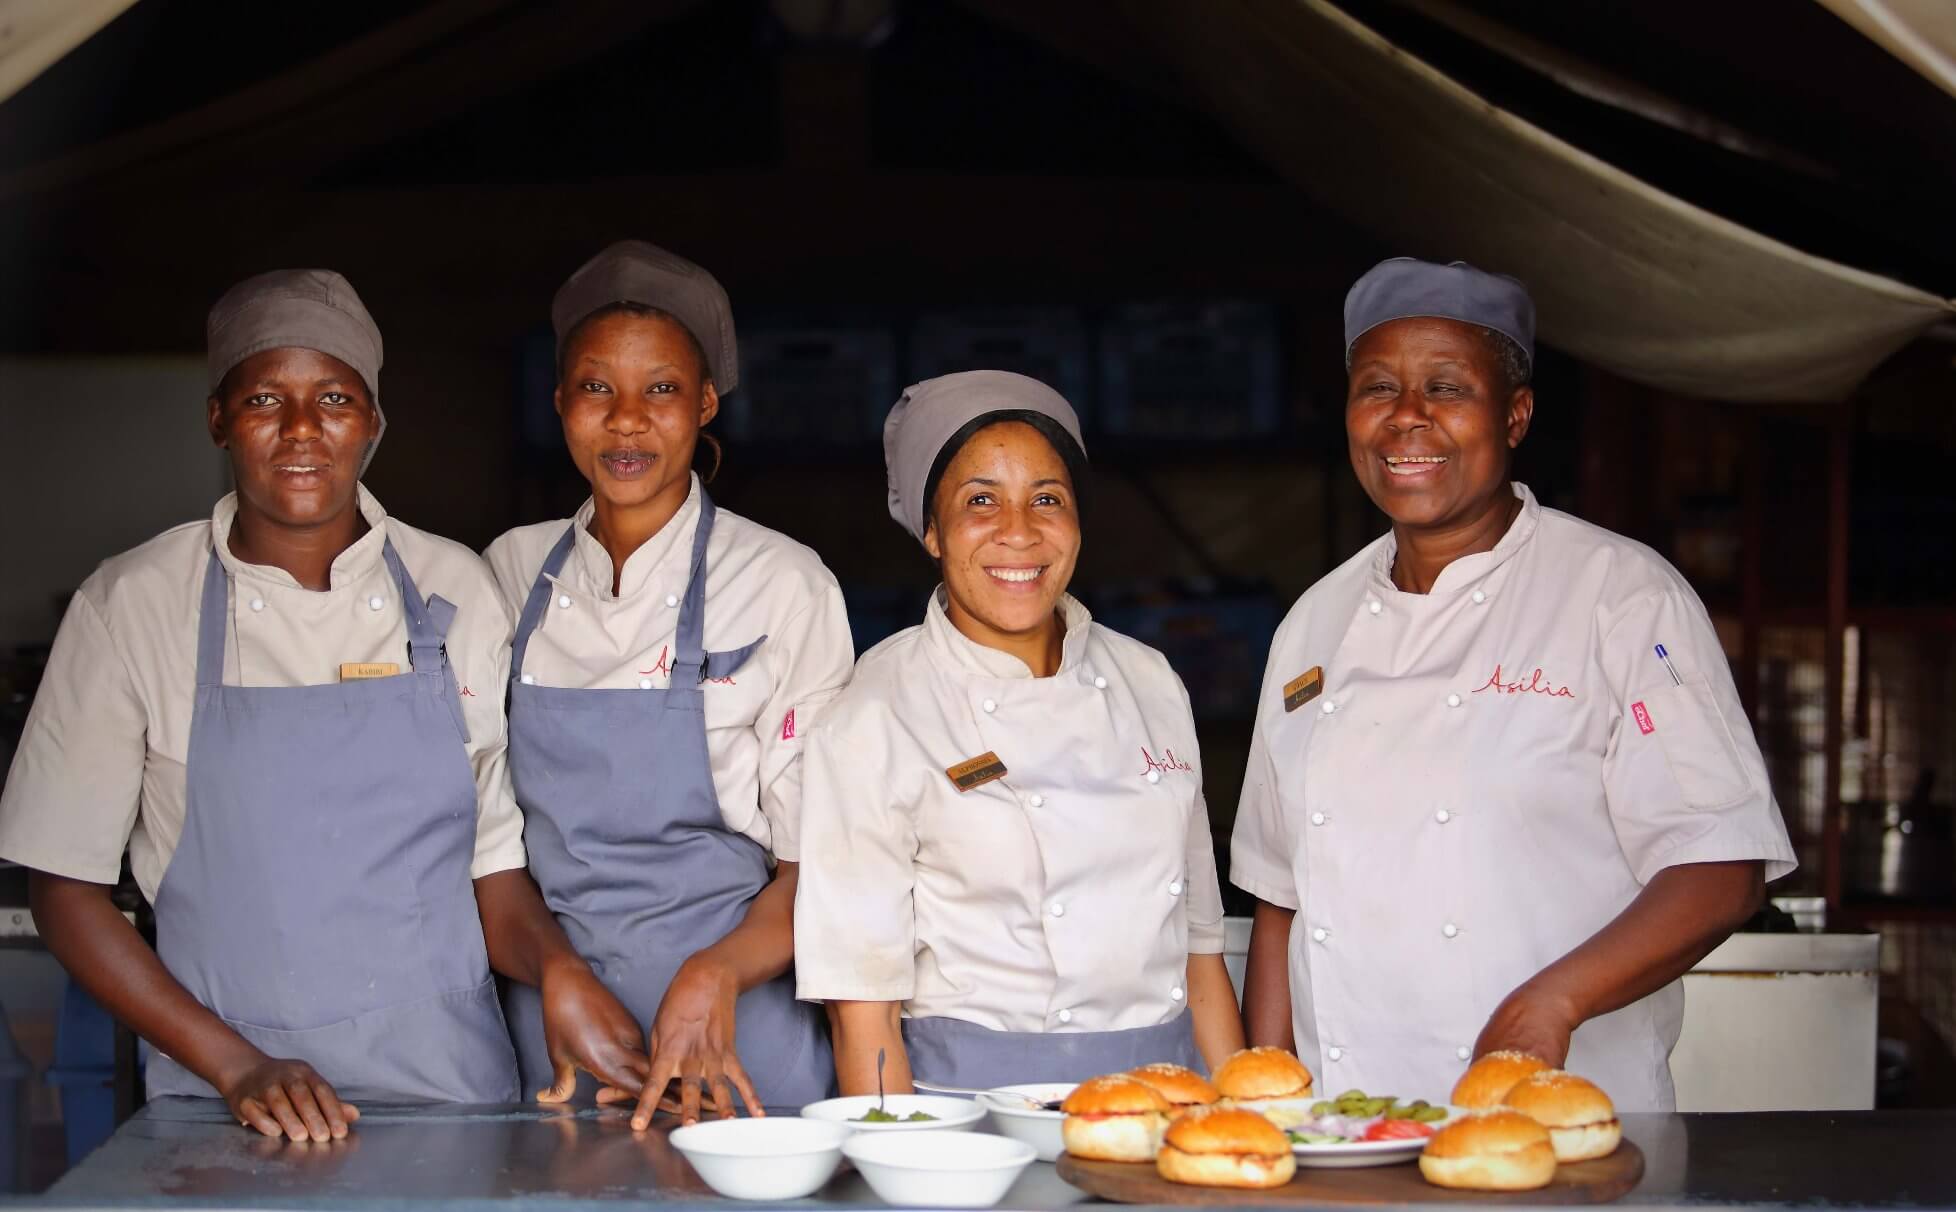 Dunia team of ladies chefs